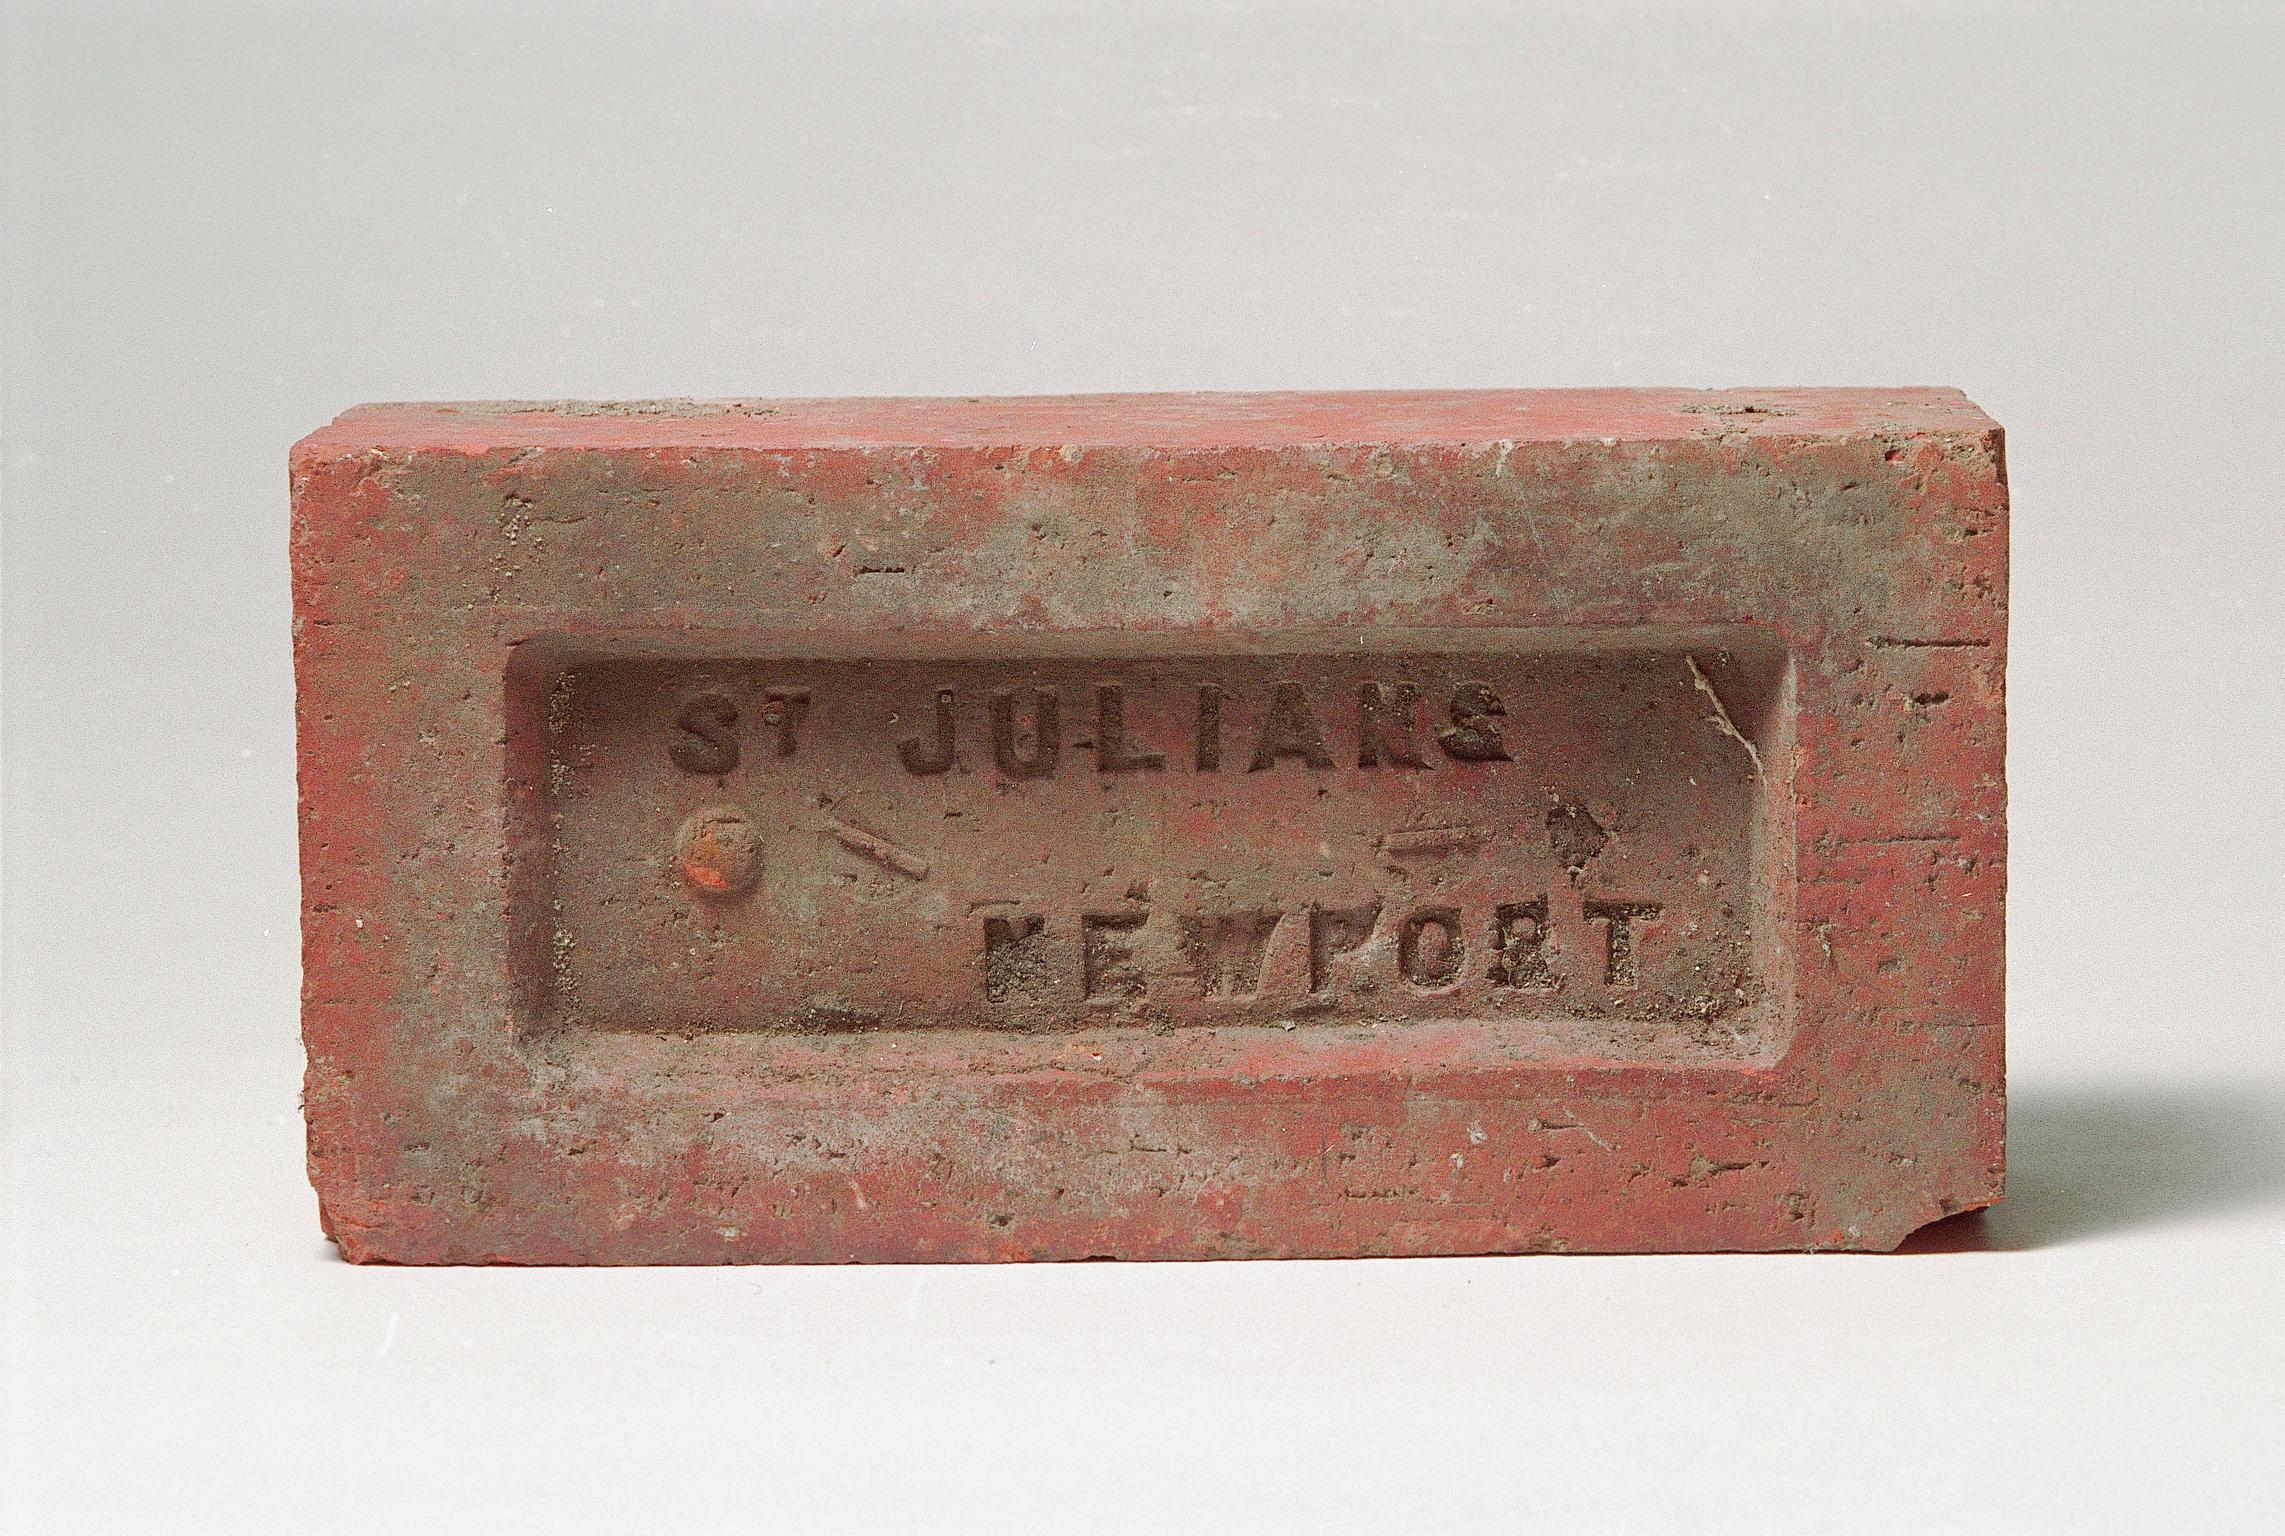 St. Julians Newport, brick